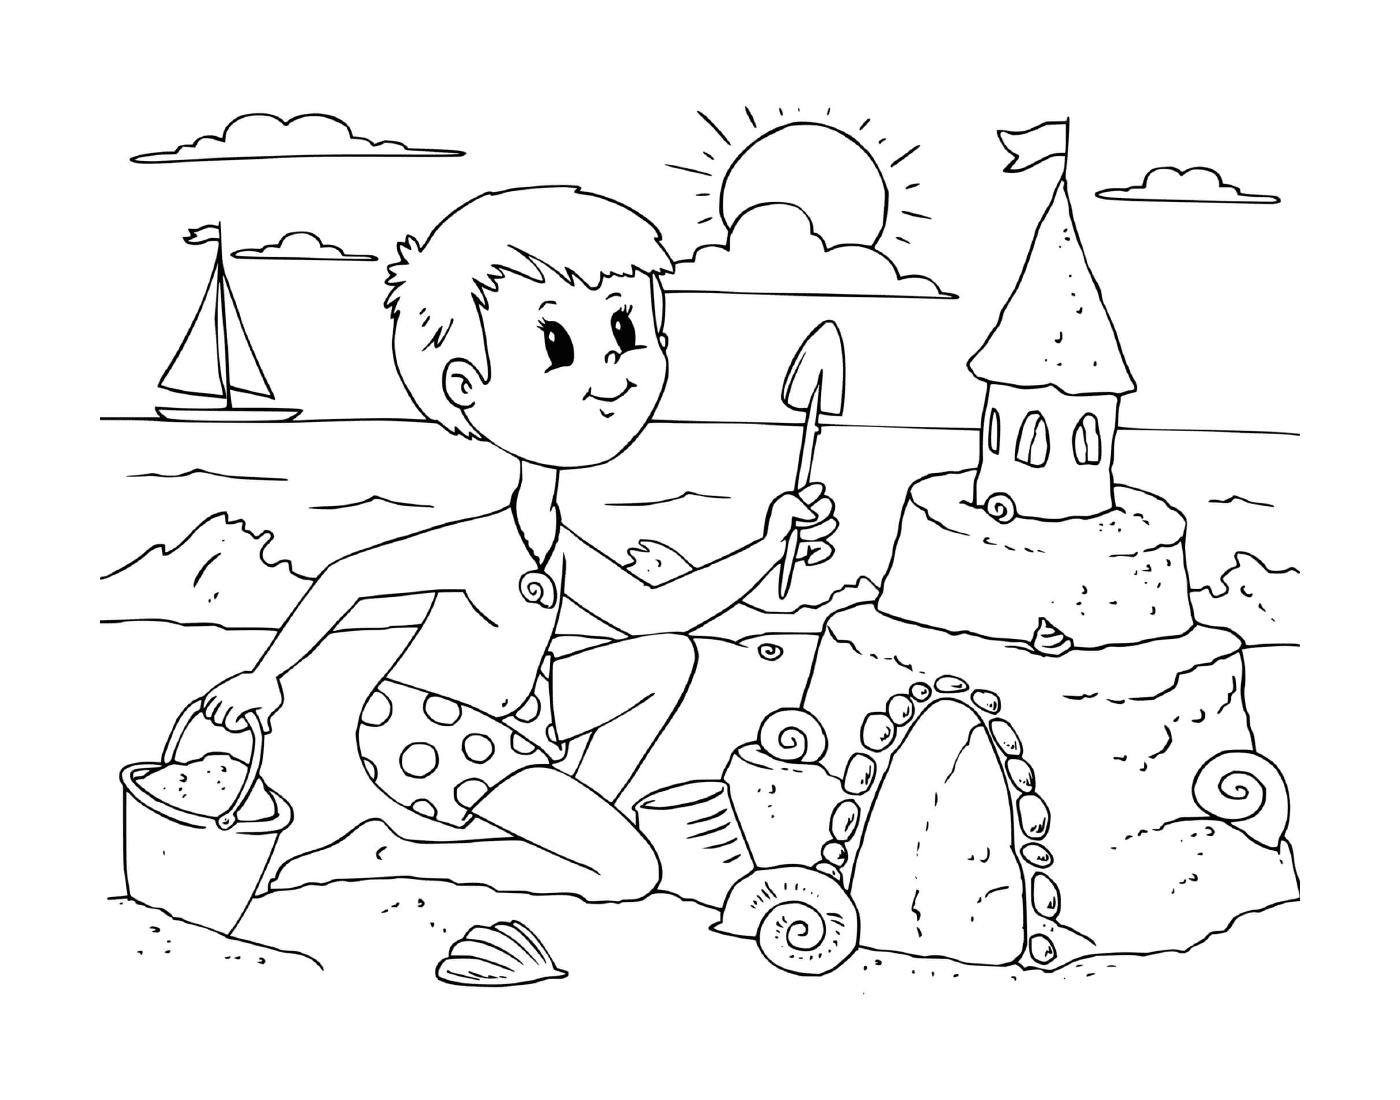  Un ragazzo costruisce un castello di sabbia sulla spiaggia 